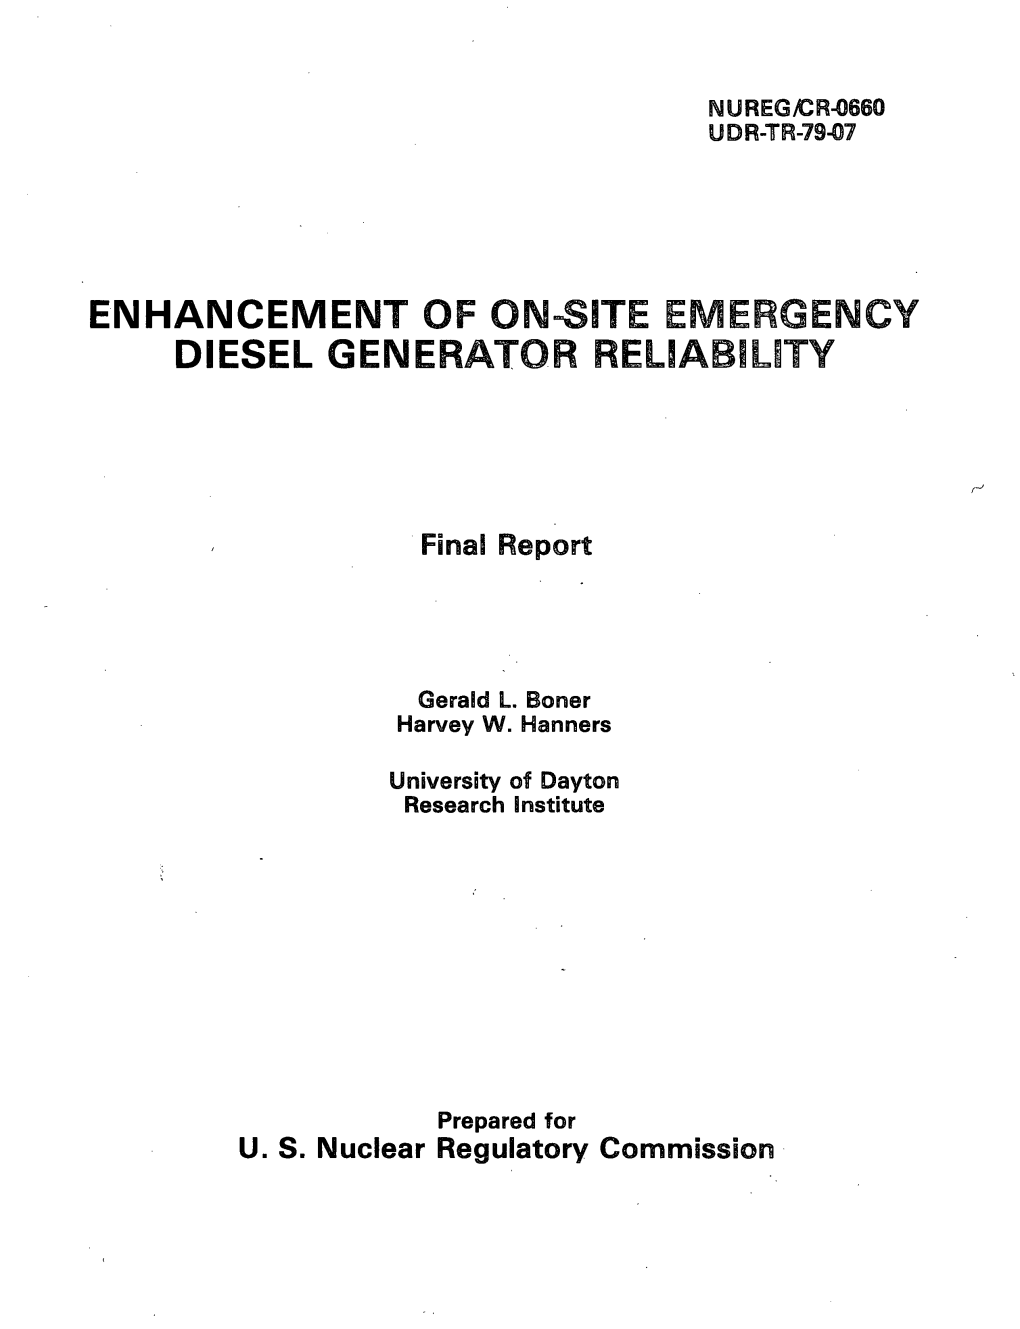 NUREG/CR-0660, "Enhancement of On-Site Emergency Diesel